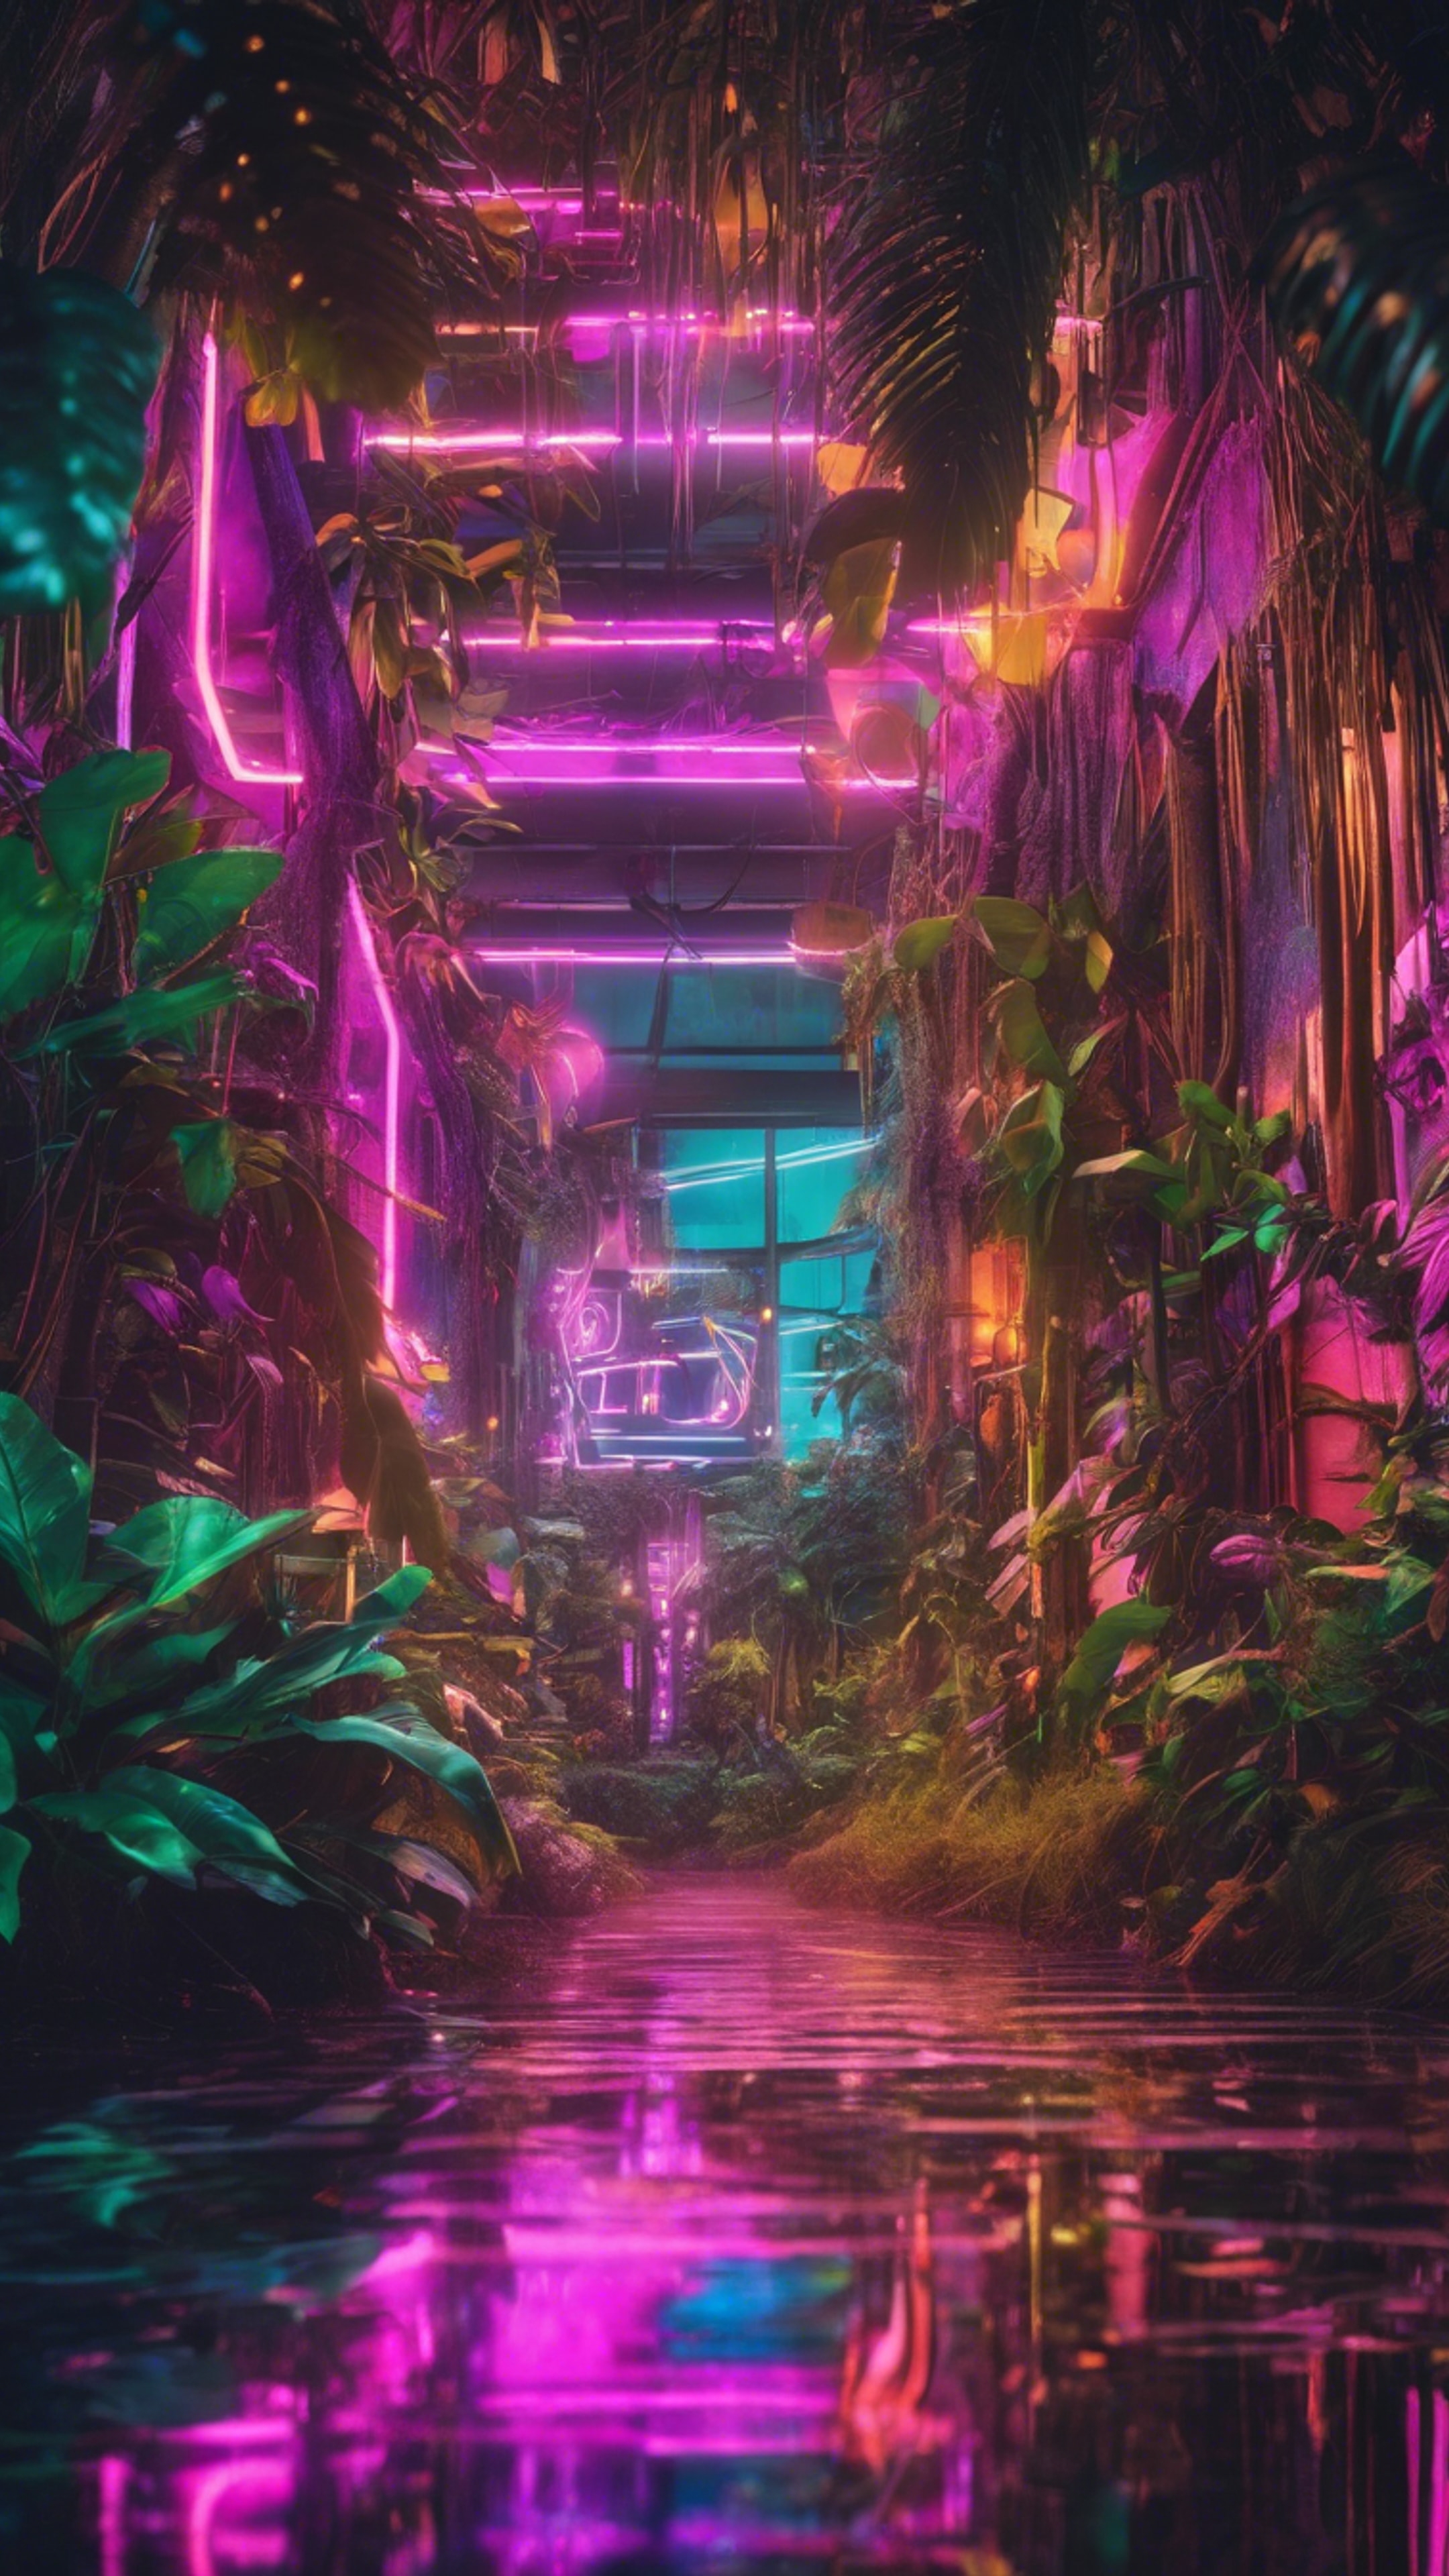 A vibrant neon city hidden deep within a jungle, a mix of nature and tech. Papel de parede[0d251fec08bc49d6a8fd]